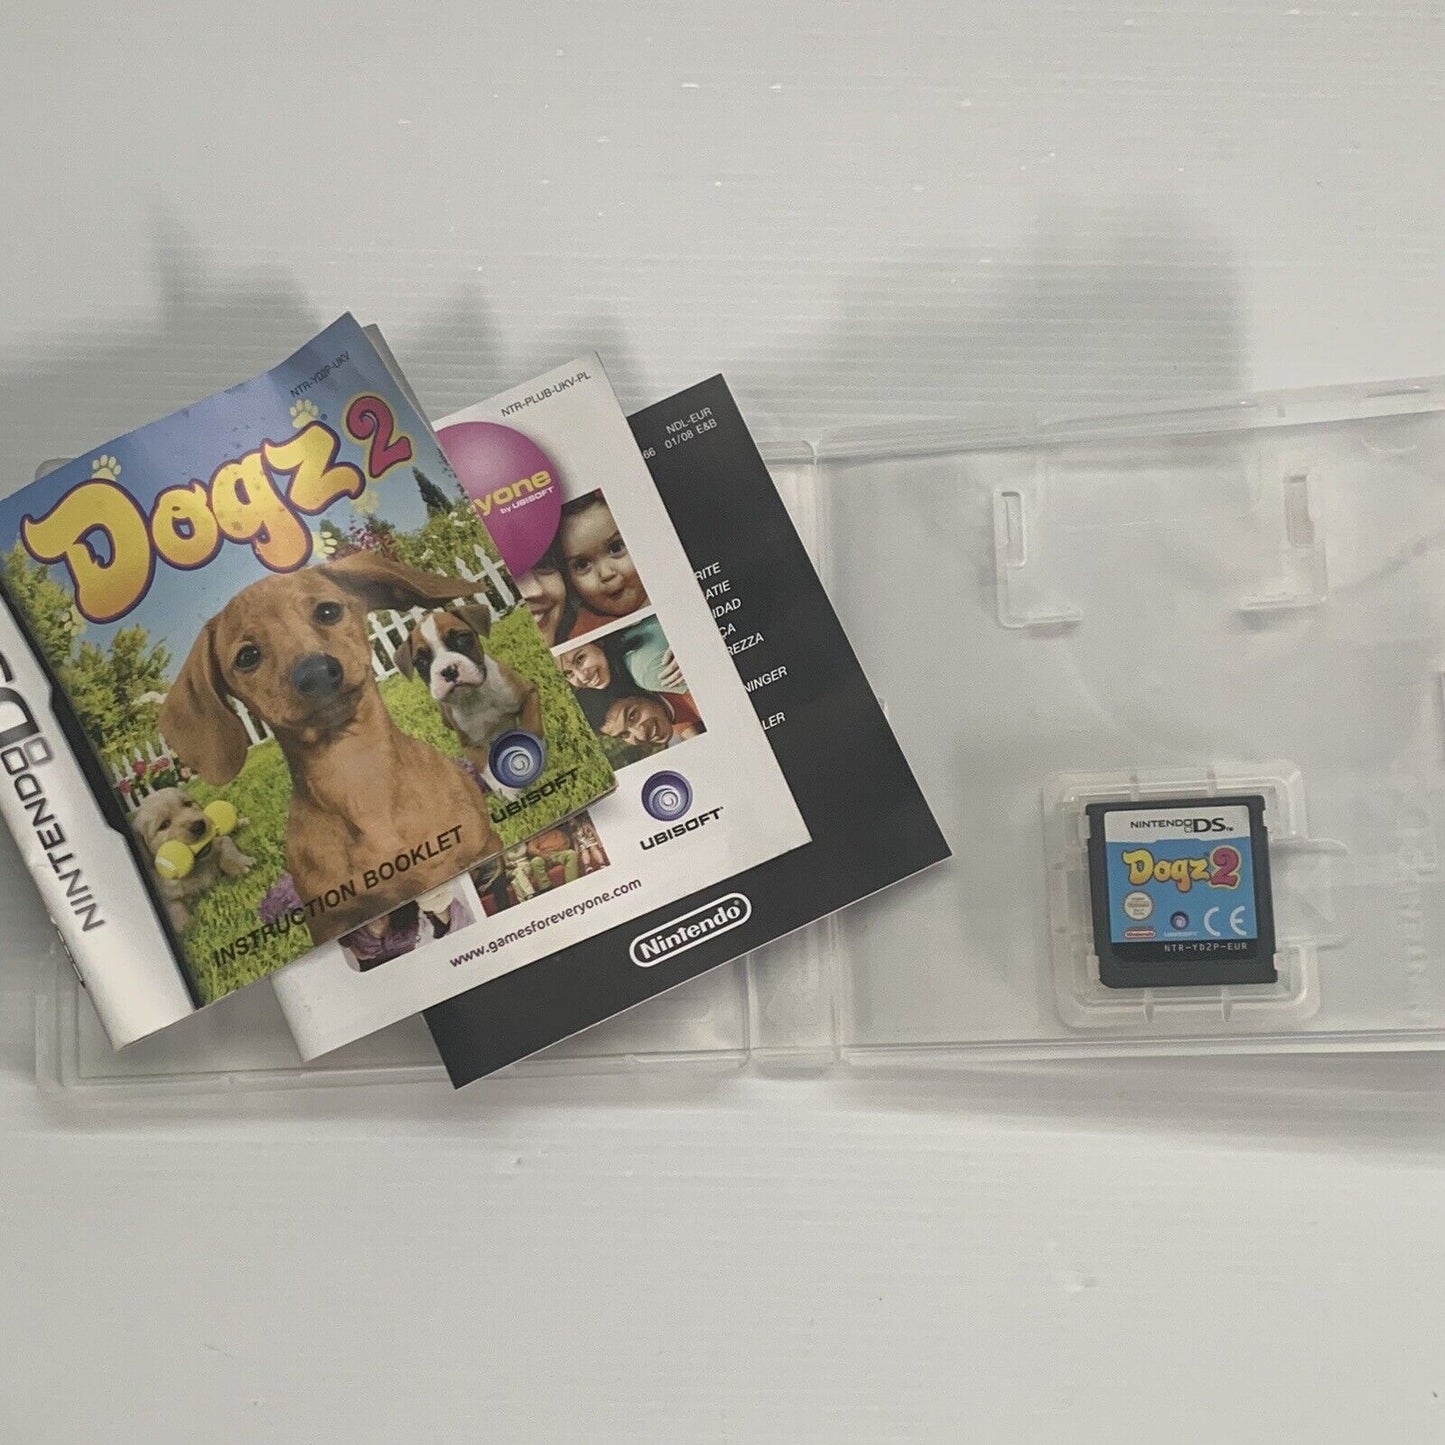 Dogz 2 Nintendo DS Game